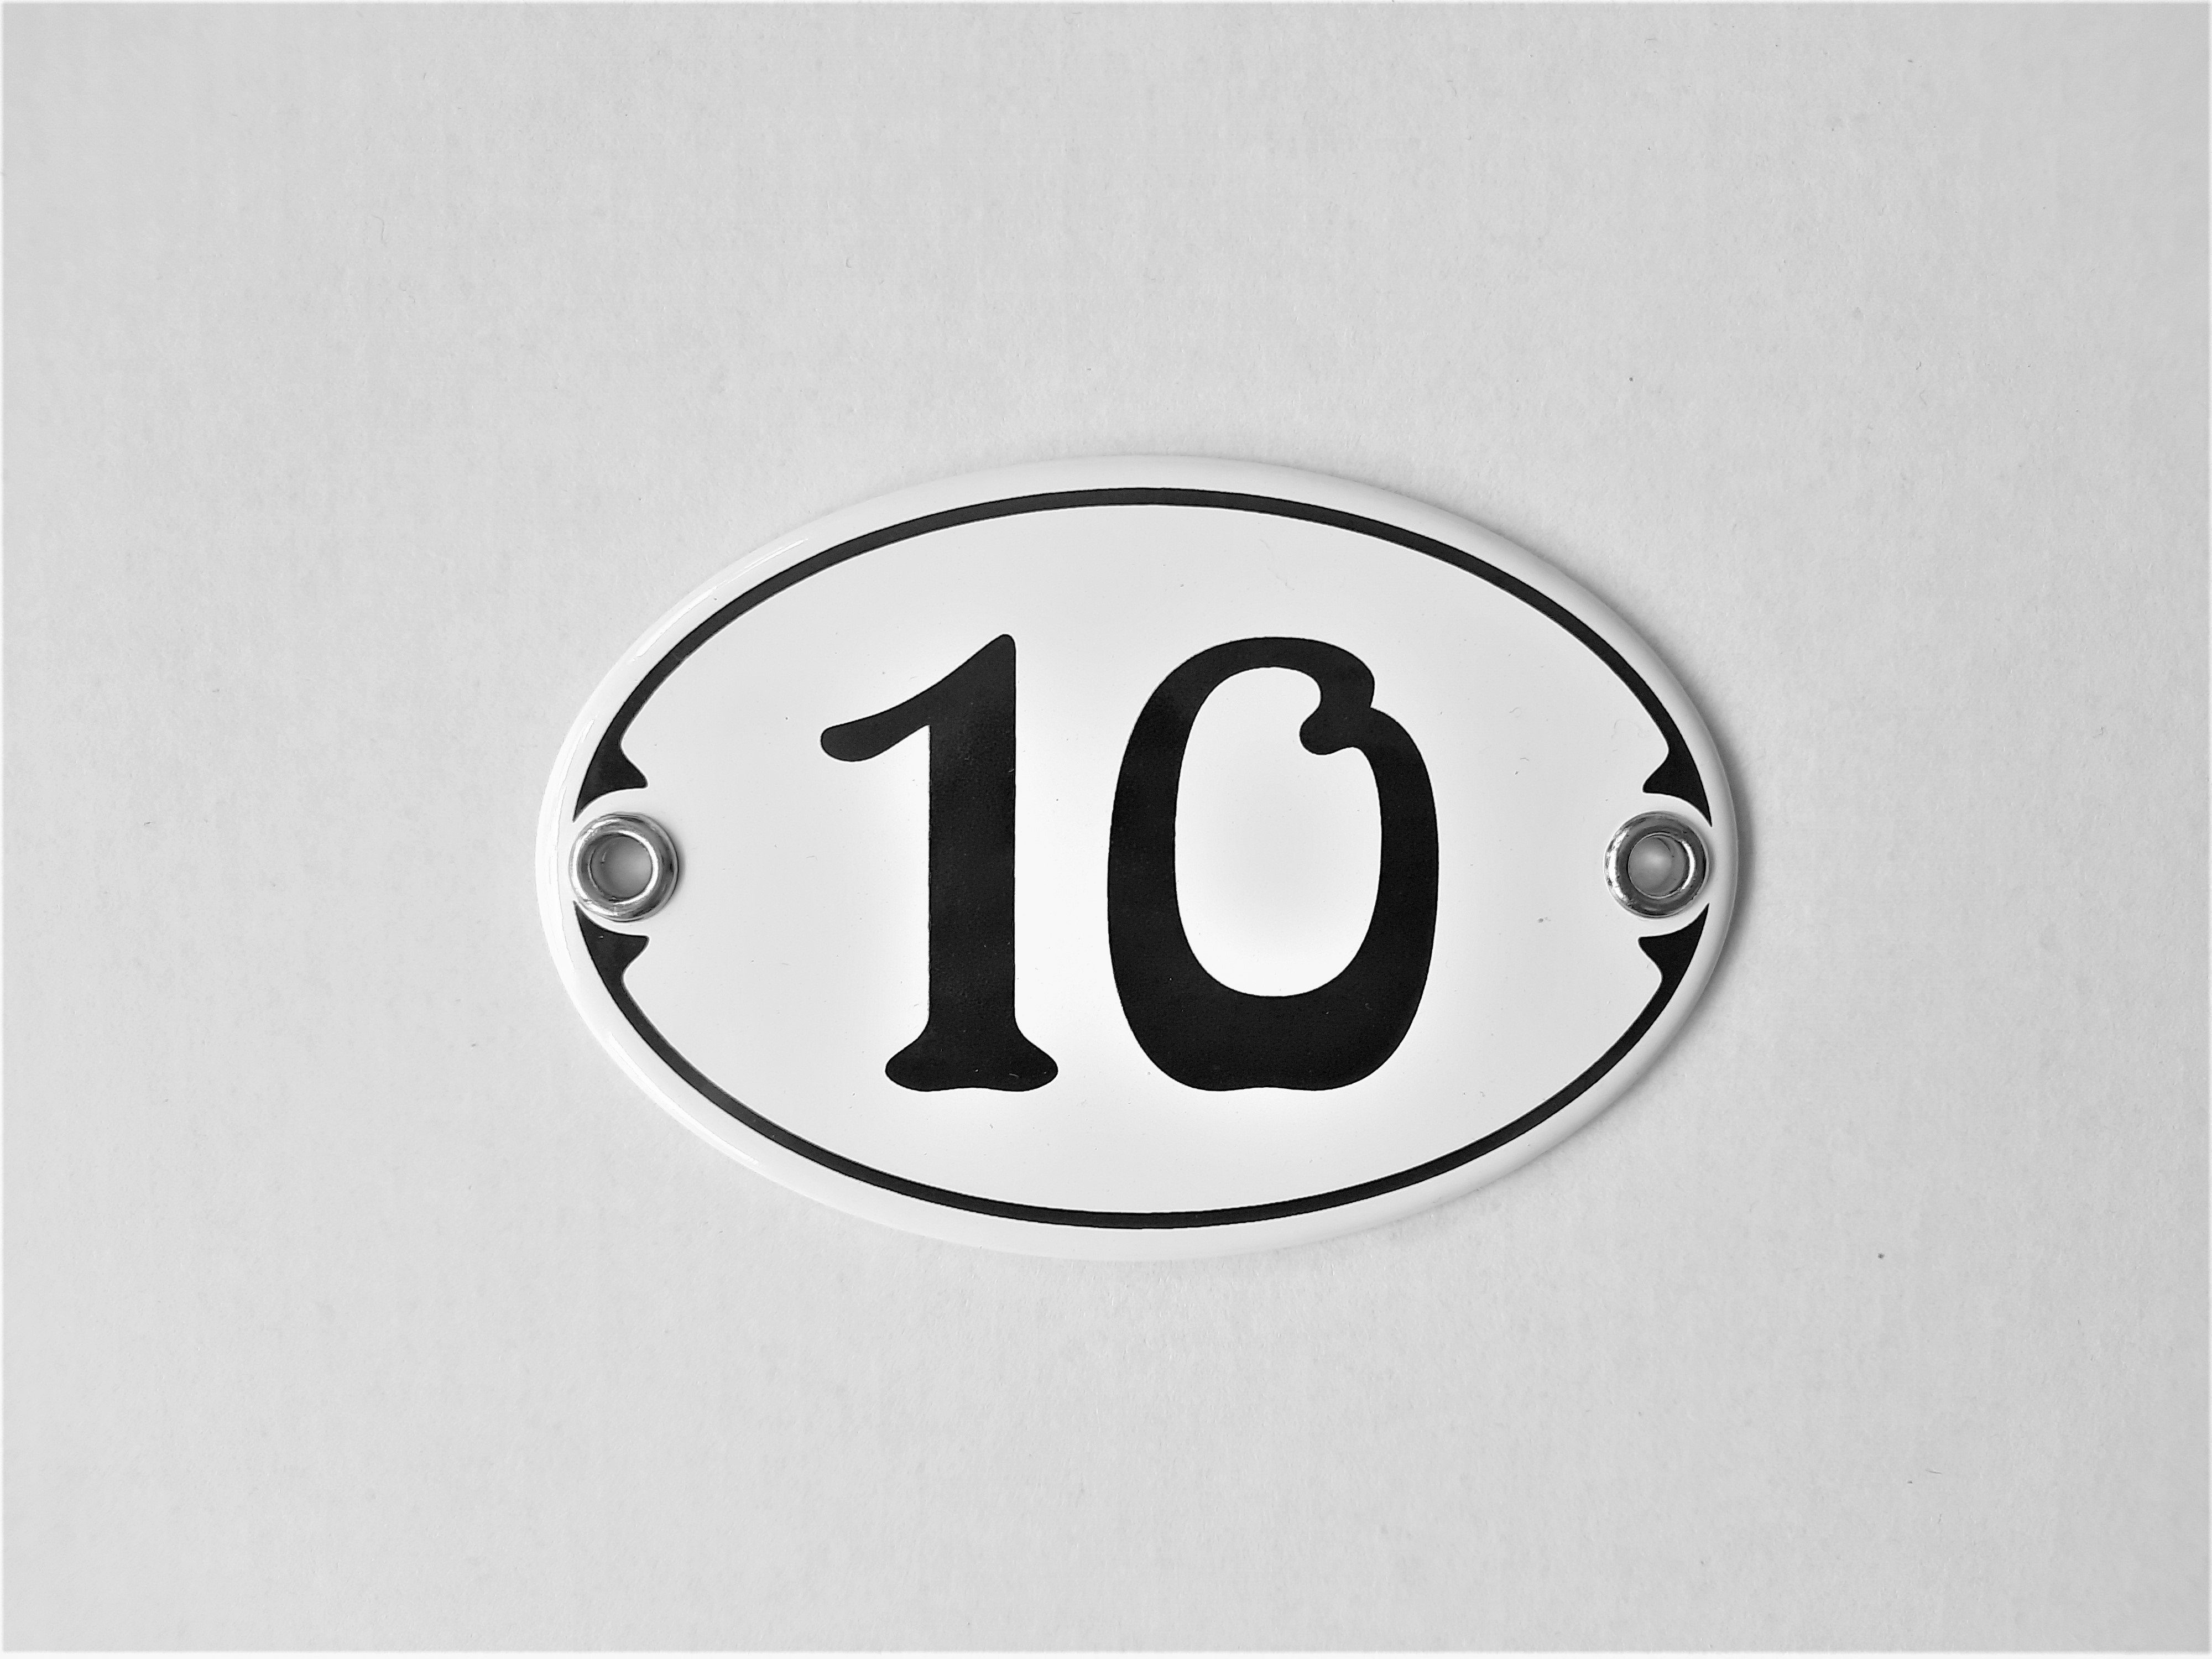 Elina Email Hausnummer Zahlenschild "10", (Emaille/Email) Schilder